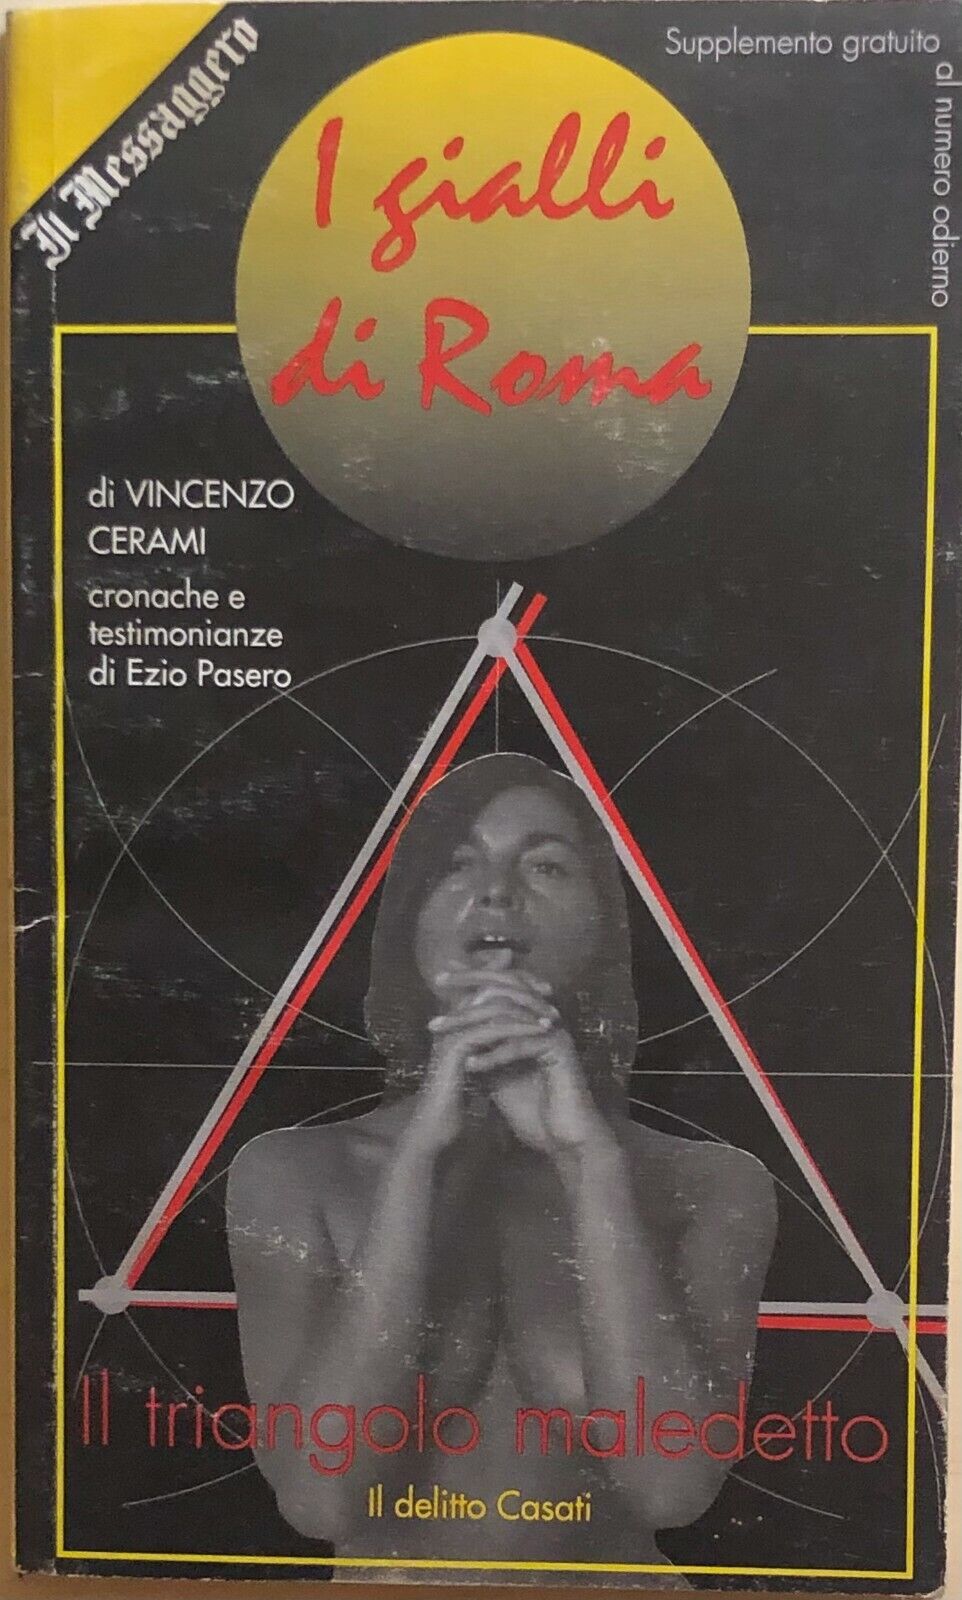 Il triangolo maledetto di Vincenzo Cerami, Il Messaggero